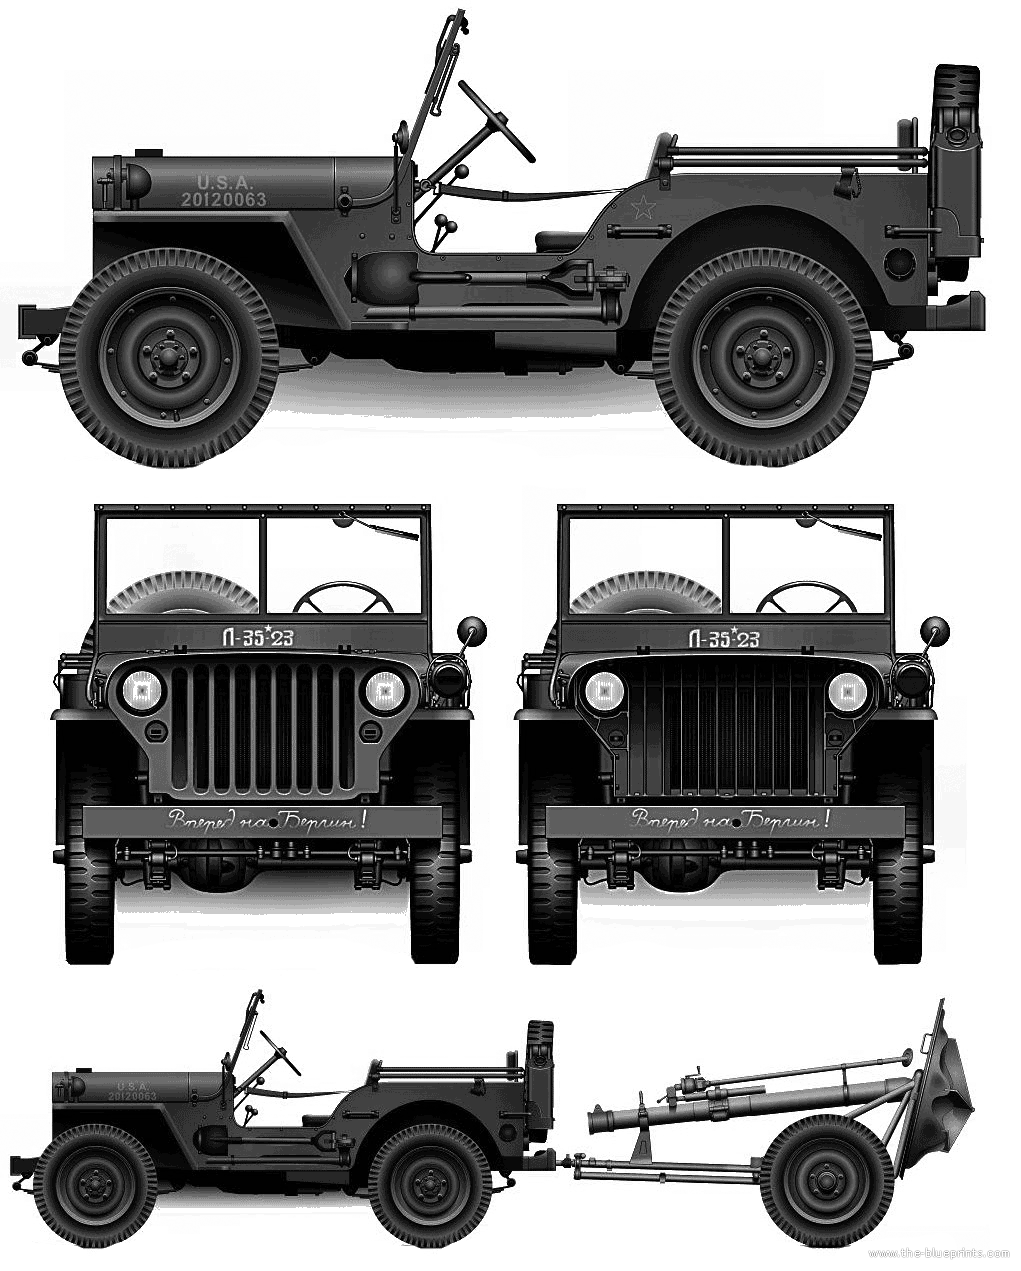 MB 025ton 4x4 1941 Jeep